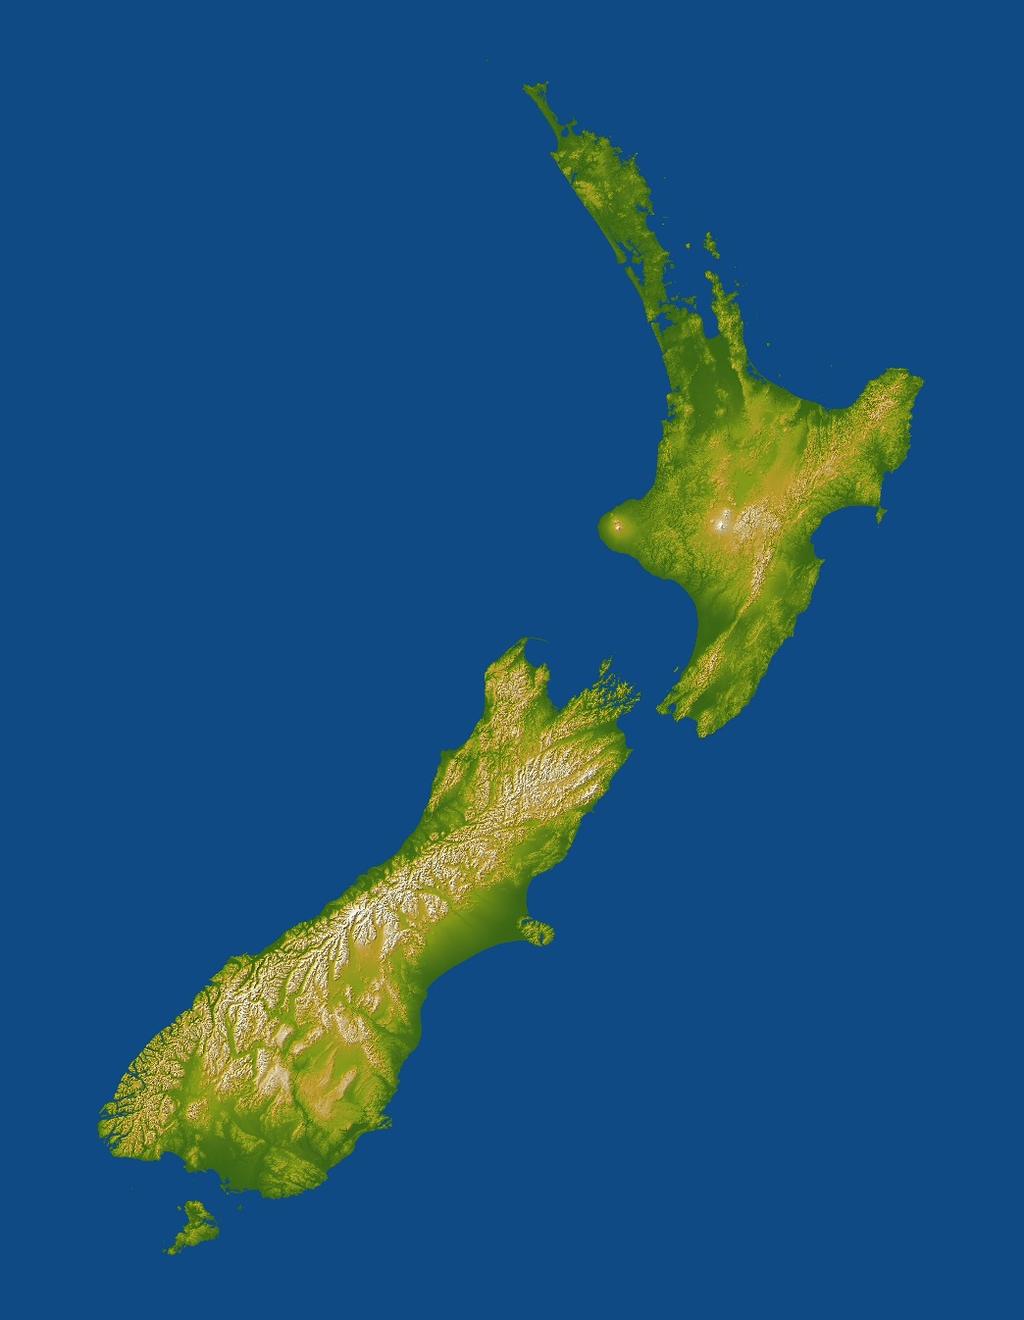 New Zealand Production Capacity?